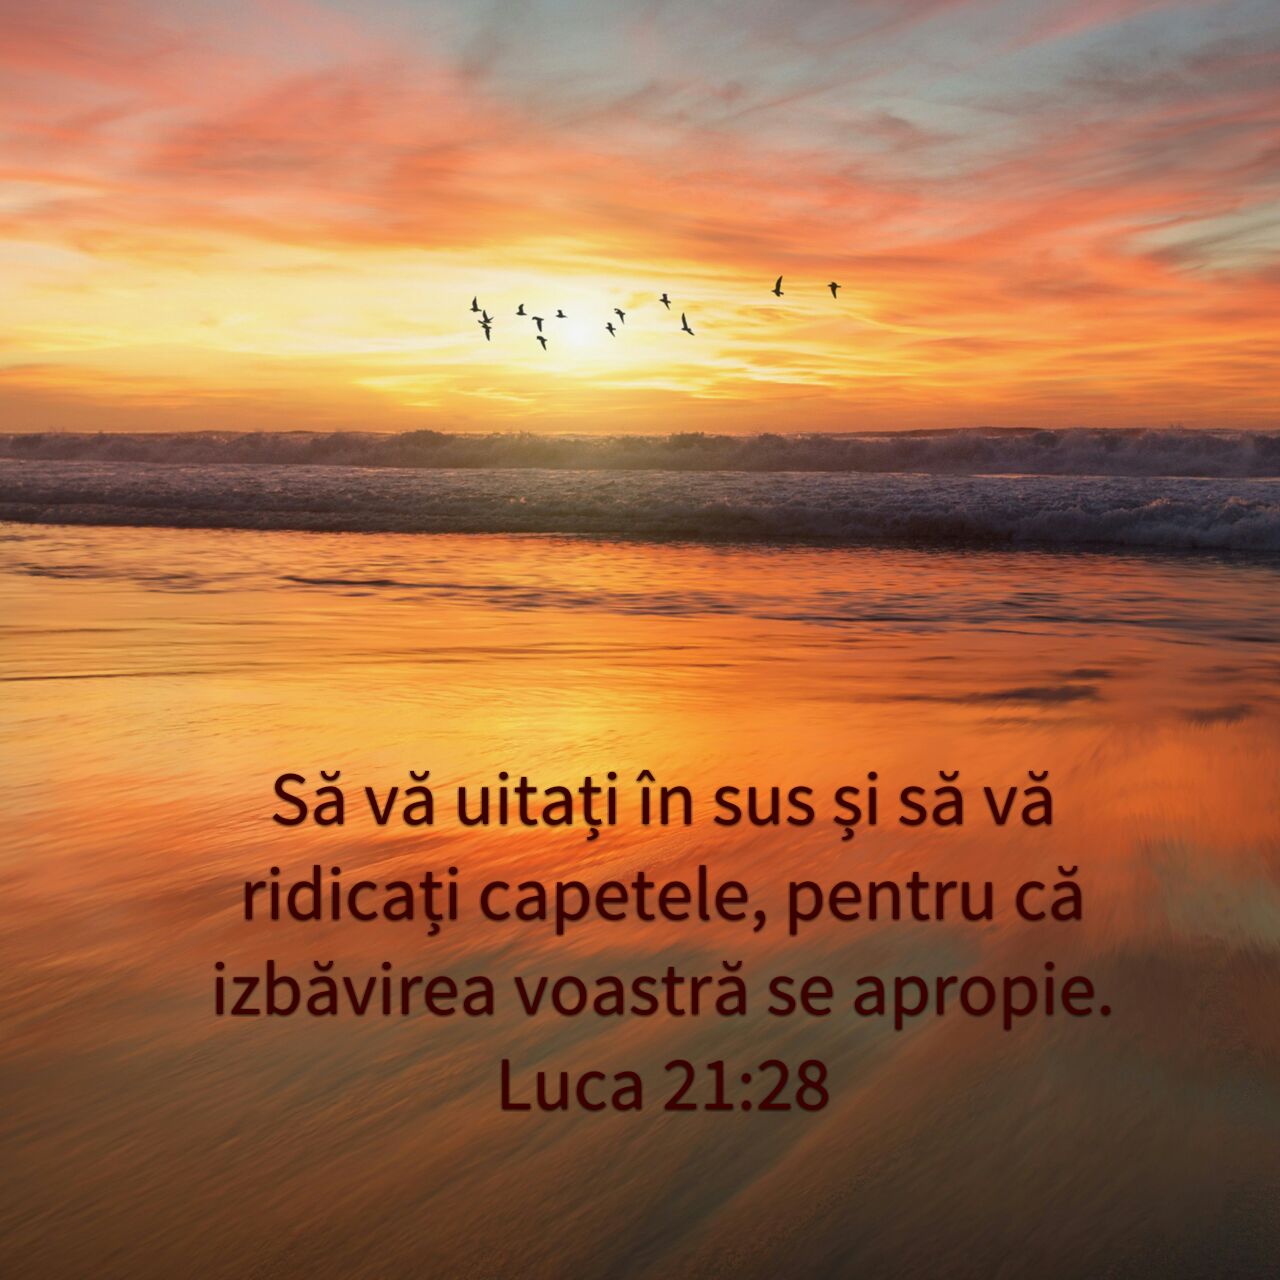 Luca 21:28